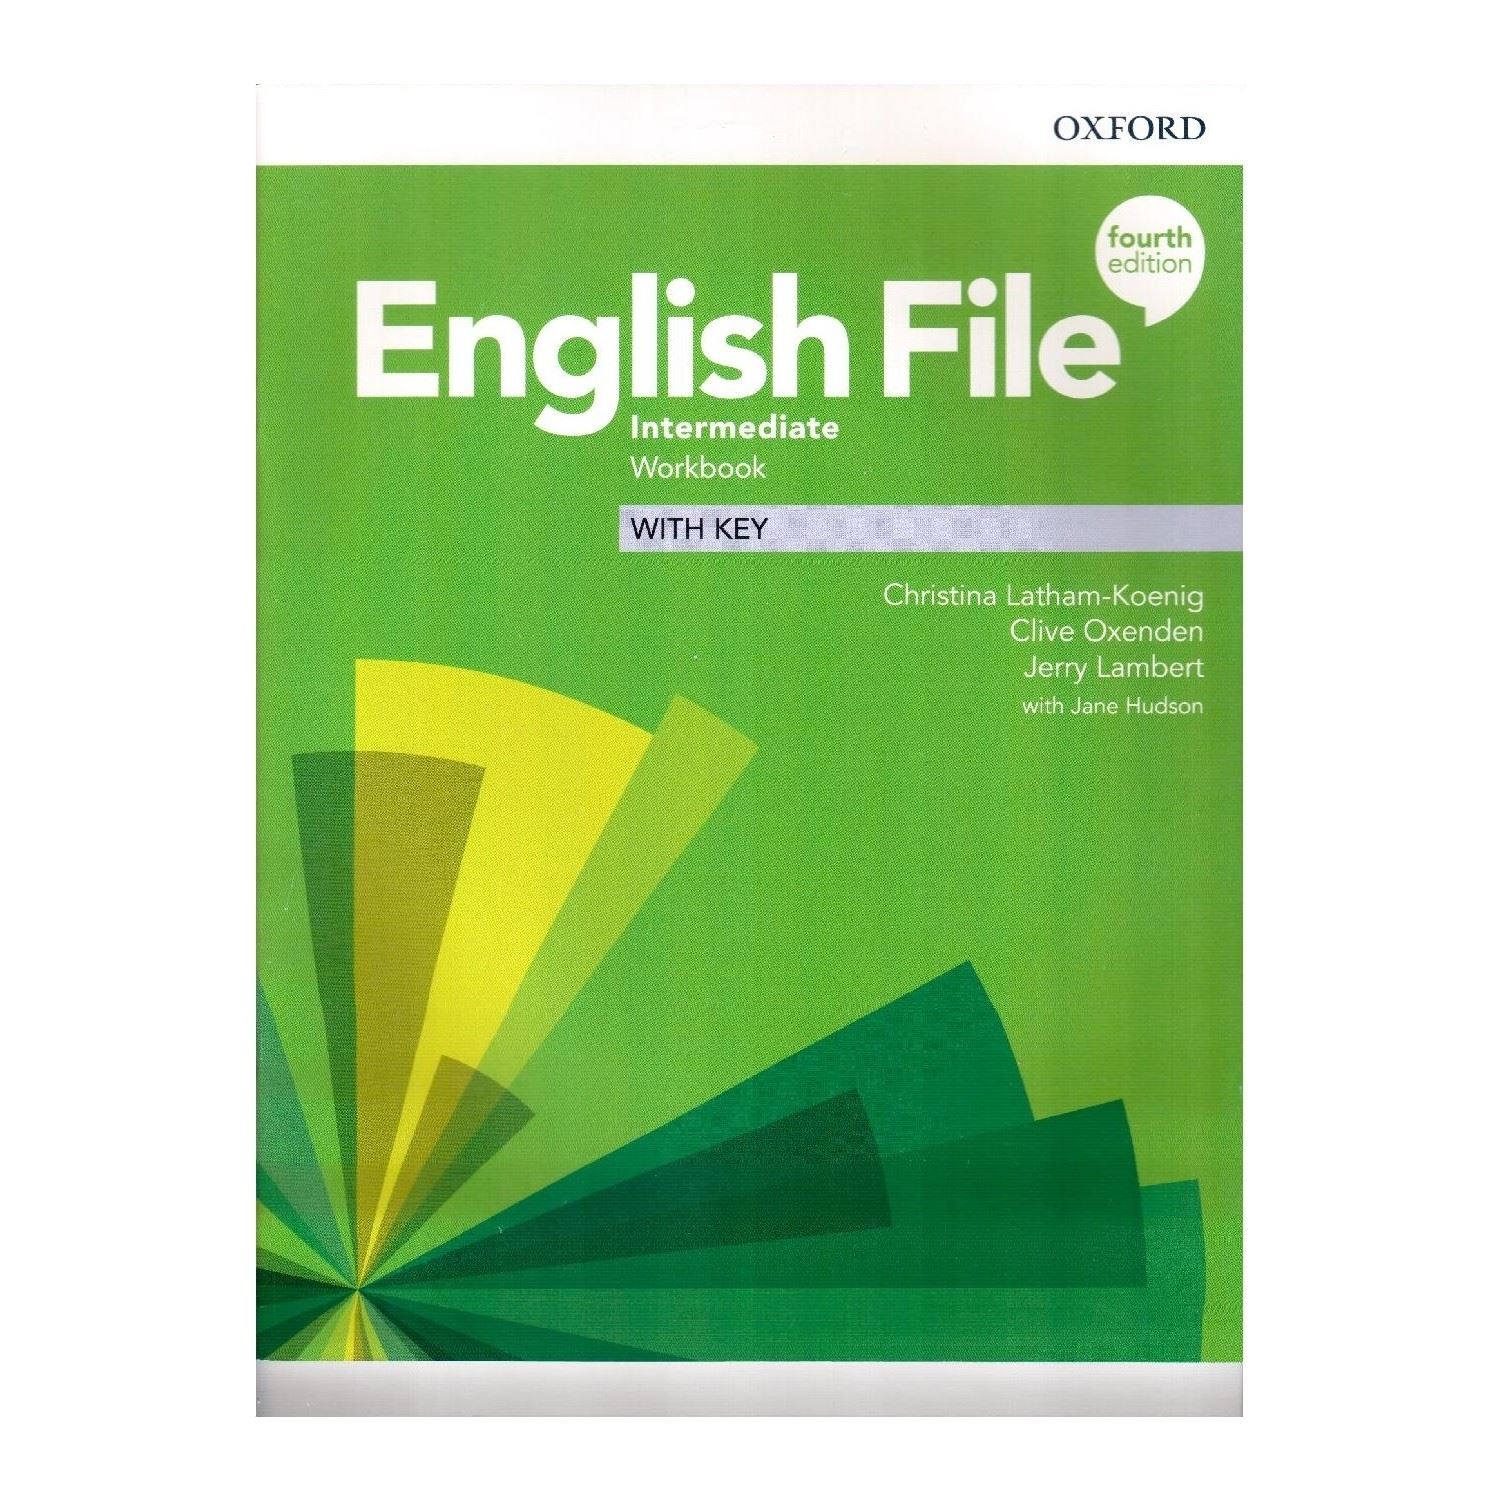 English file intermediate answer key